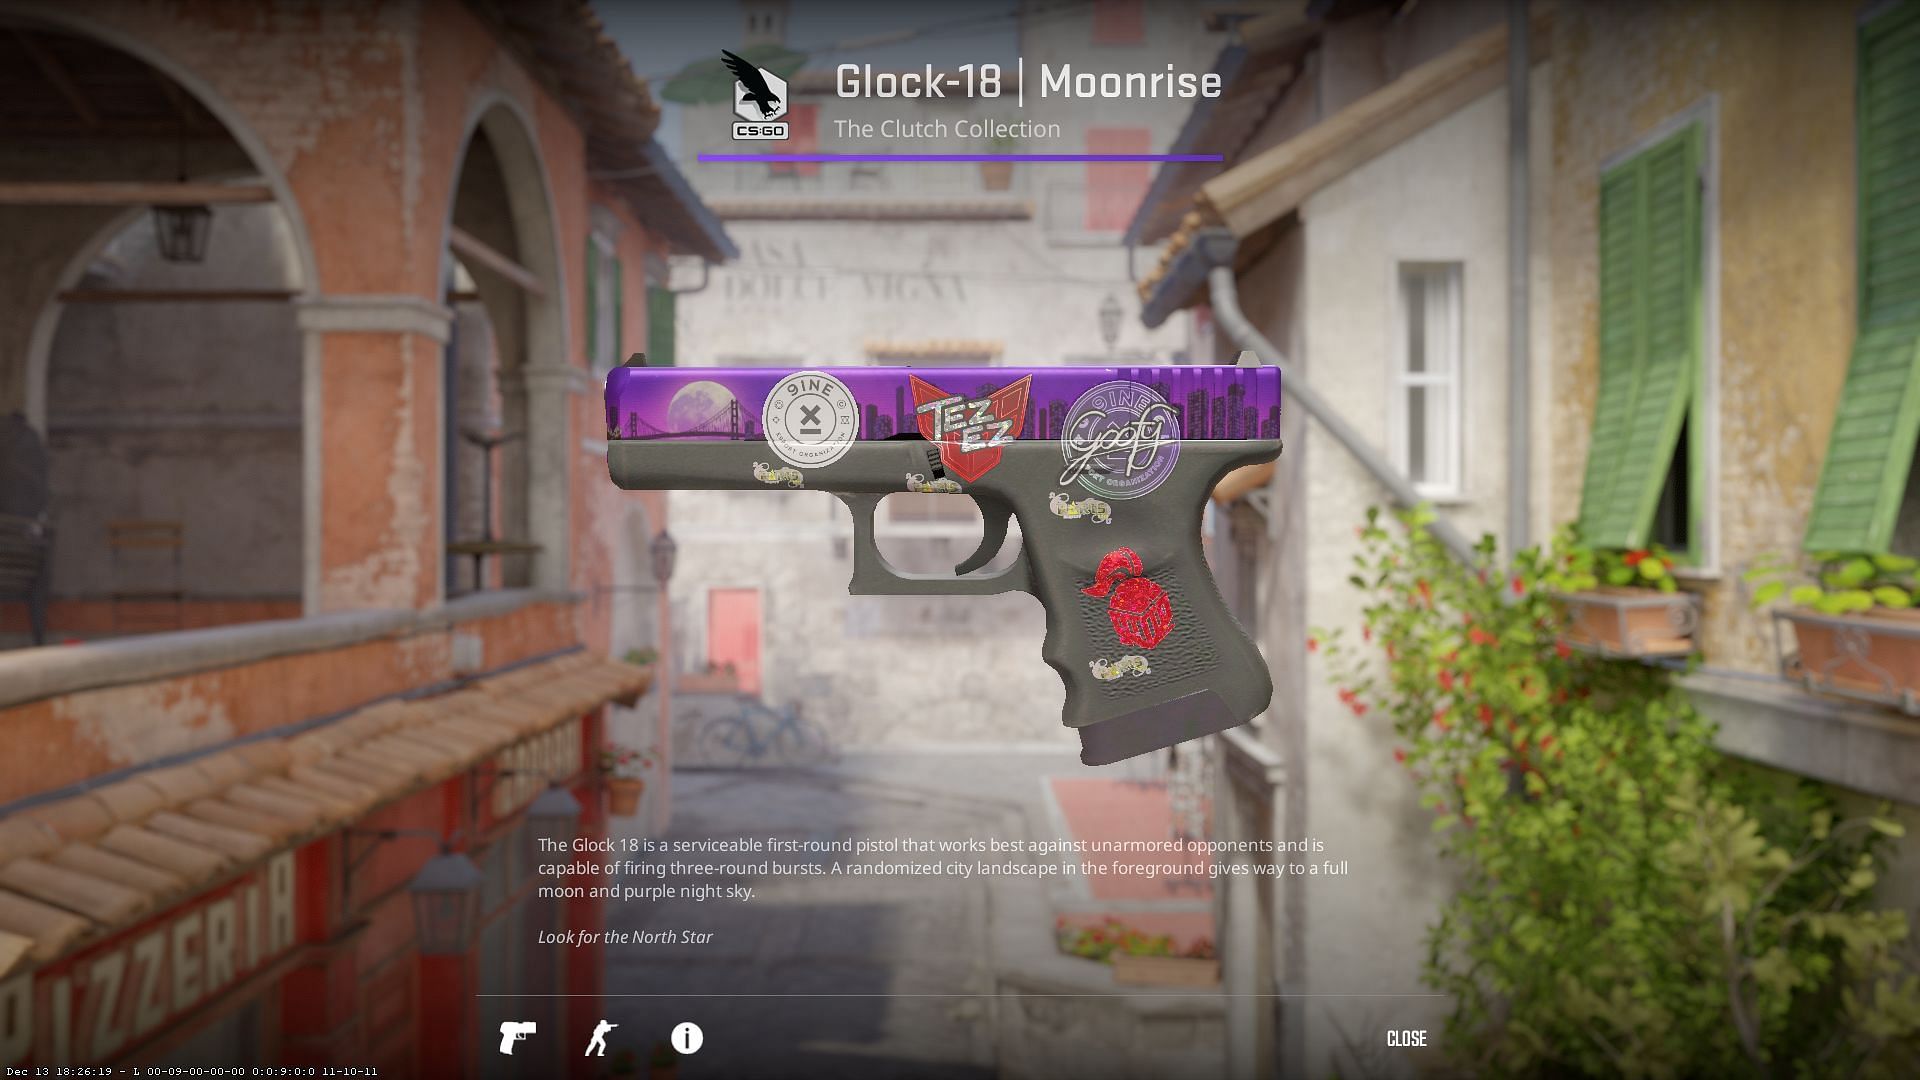 Glock-18 Moonrise (Image via Valve)